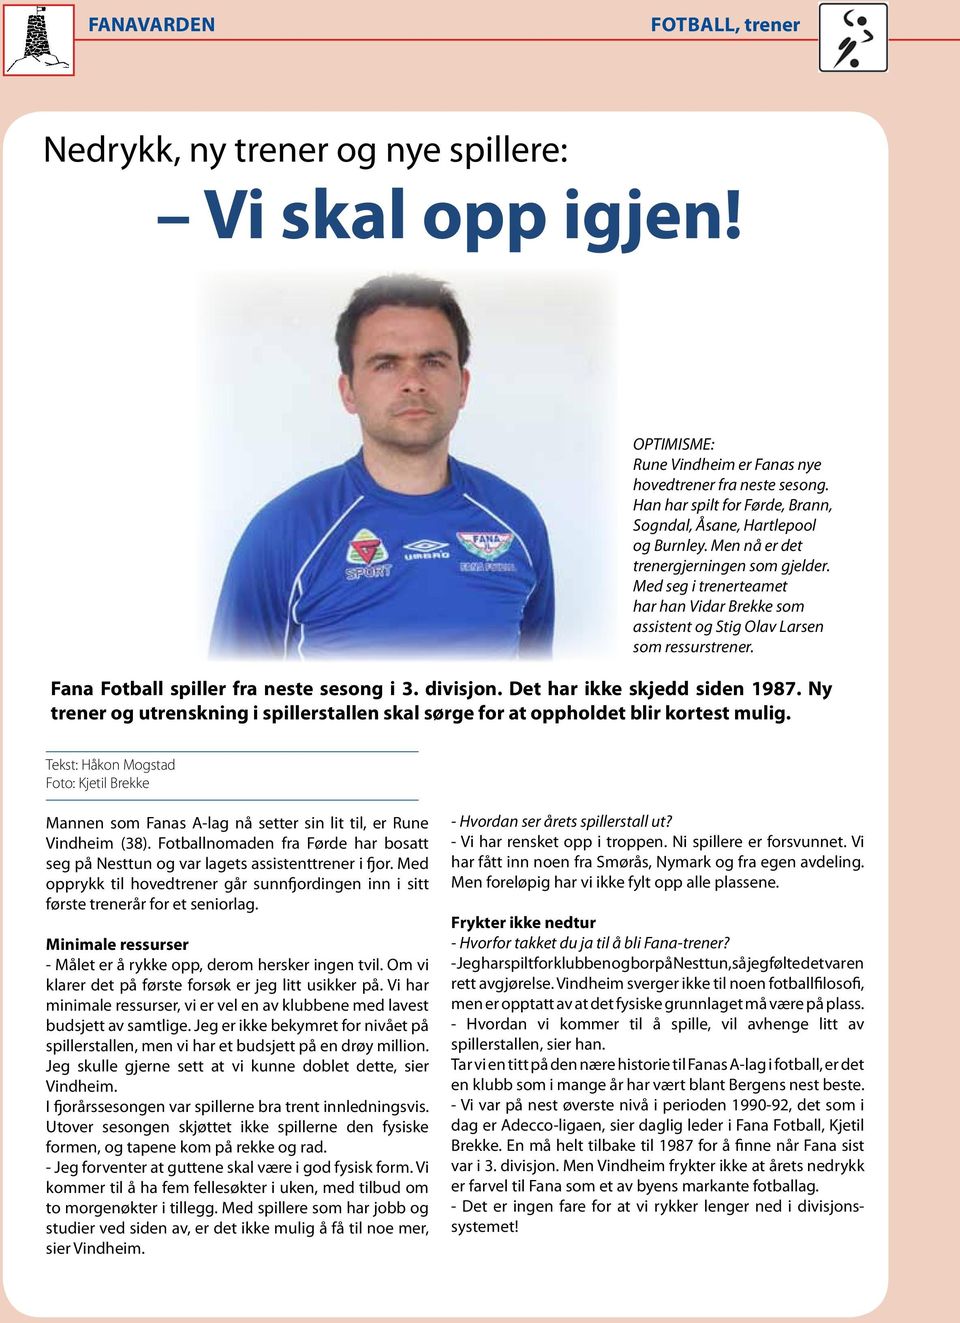 Med seg i trenerteamet har han Vidar Brekke som assistent og Stig Olav Larsen som ressurstrener. Fana Fotball spiller fra neste sesong i 3. divisjon. Det har ikke skjedd siden 1987.